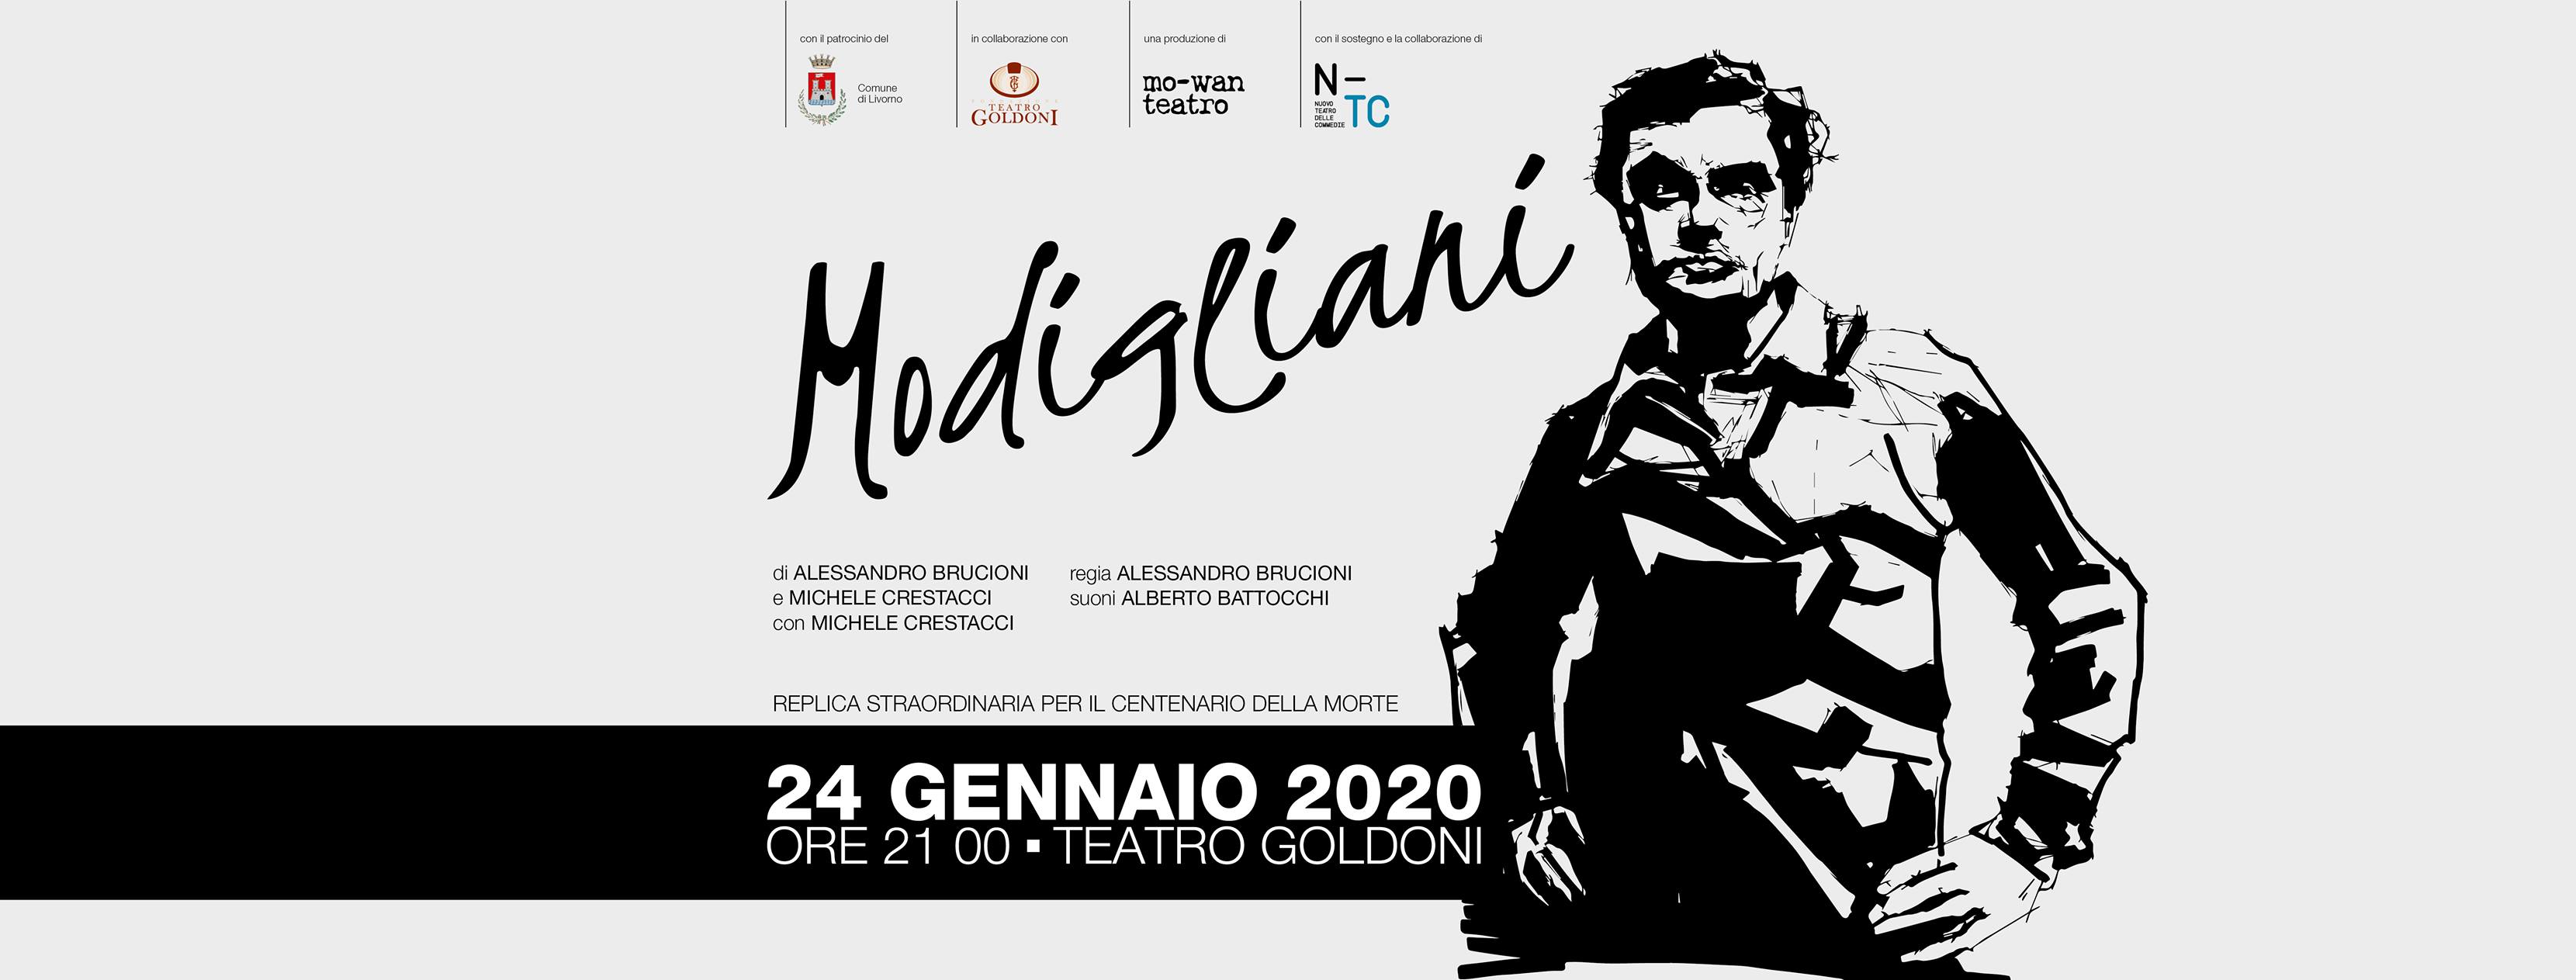 Modigliani Replica Straordinaria Centenario